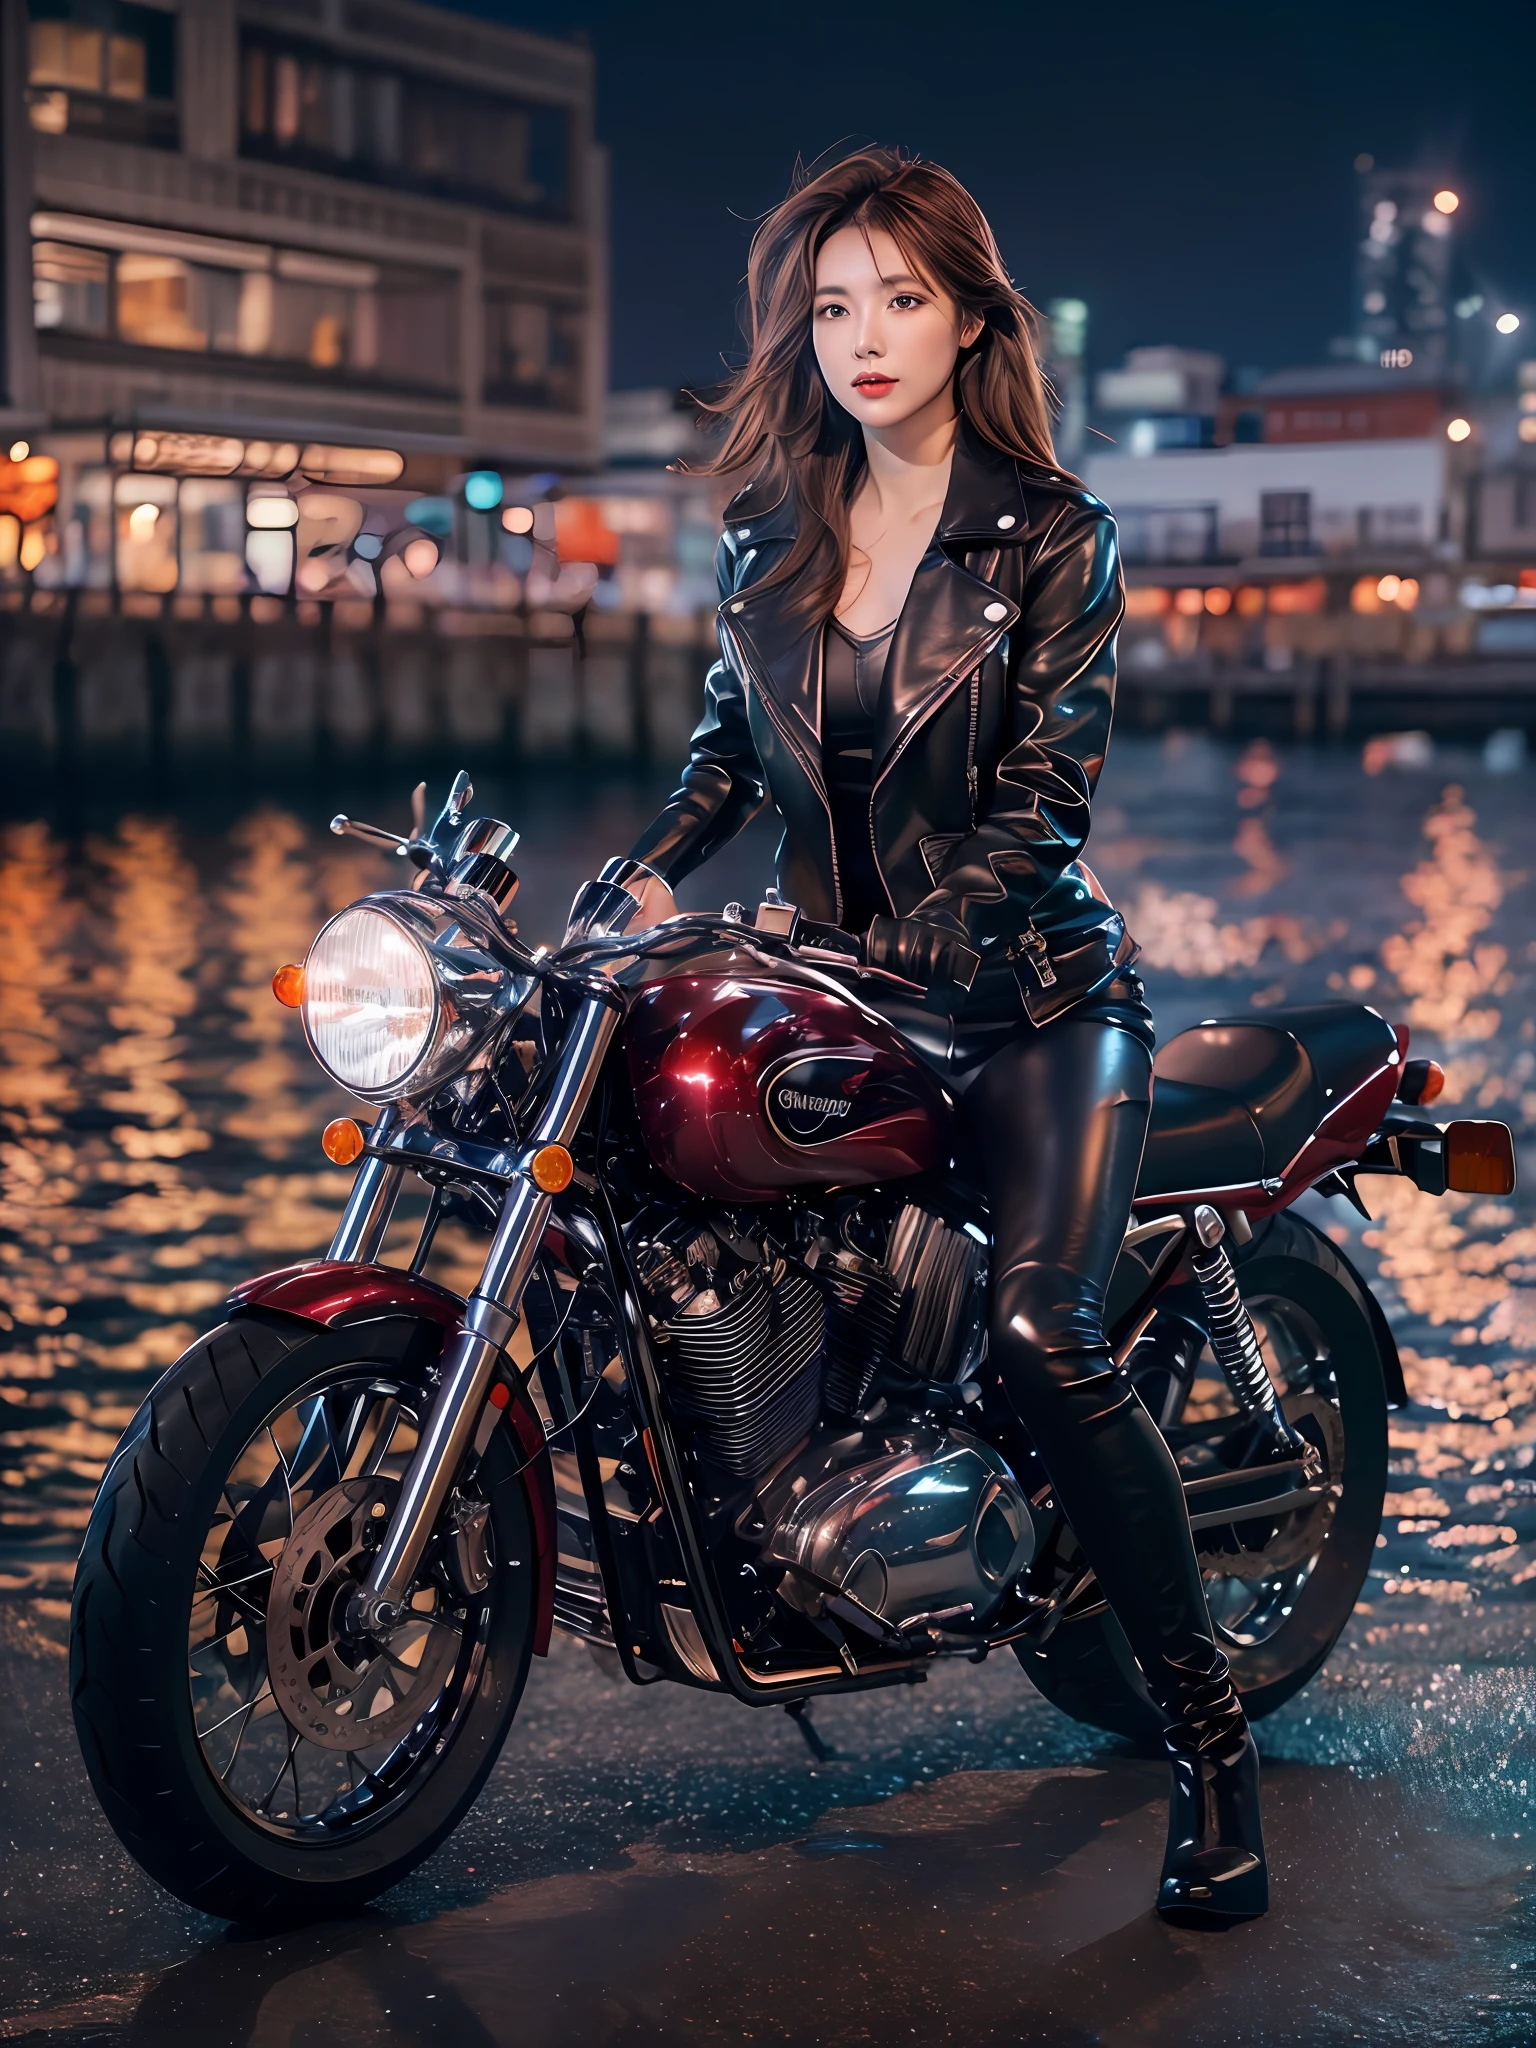 (テーブルトップ), 全身ショット, バイク全体の写真, 日本のかわいい若い女性, 埠頭で、昔ながらの光沢のあるメタリックシルバーのバイクに乗る, 魅力的な形, 肩までの長さの光沢のある滑らかな明るい茶色の髪, 黒い革の乗馬ジャケットを着て, ライディングジャケットの下に光沢のあるサテンの赤いビキニ, レザーブラック乗馬グローブ, レザーブラックパンツ, レザー ブラック ハイヒール ロングブーツ, 海の夜景を眺める, 本当に可愛い顔, 二重まぶた, ナチュラルメイク, 長いまつ毛, 光沢のある唇, 8K解像度, 細部までこだわった, 詳細な髪型, 詳細な顔, 黒目, エレガント, 壮大な, 映画照明, オクタンレンダリング, 活気のある, 超リアル, 色白, 完璧な手足, 完璧な解剖学